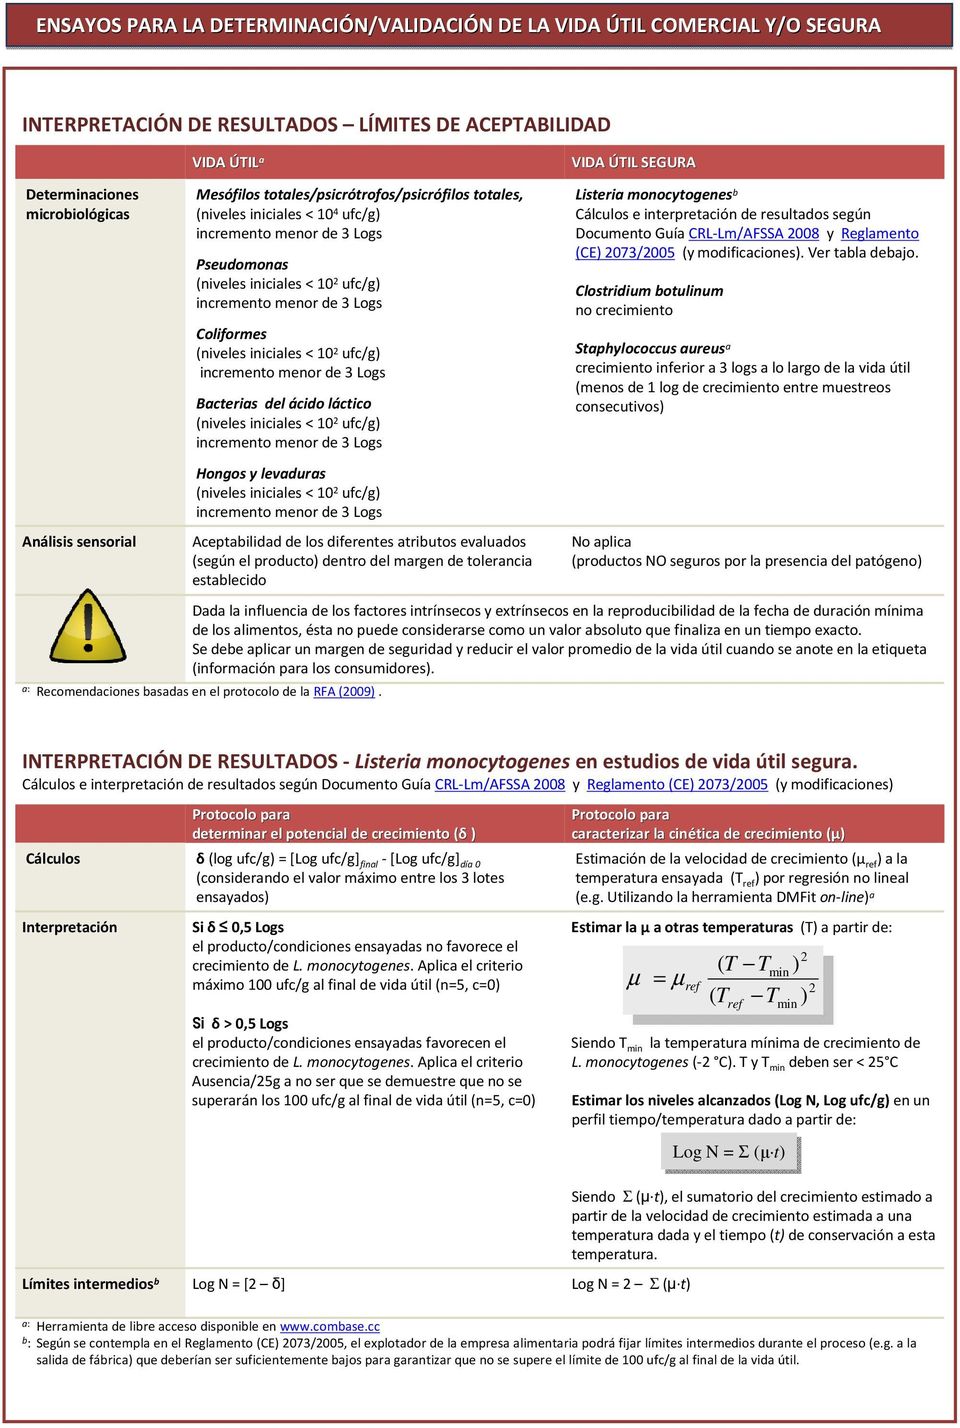 evaluados (según el producto) dentro del margen de tolerancia establecido Listeria monocytogenes b Cálculos e interpretación de resultados según Documento Guía CRL-Lm/AFSSA 2008 y Reglamento (CE)